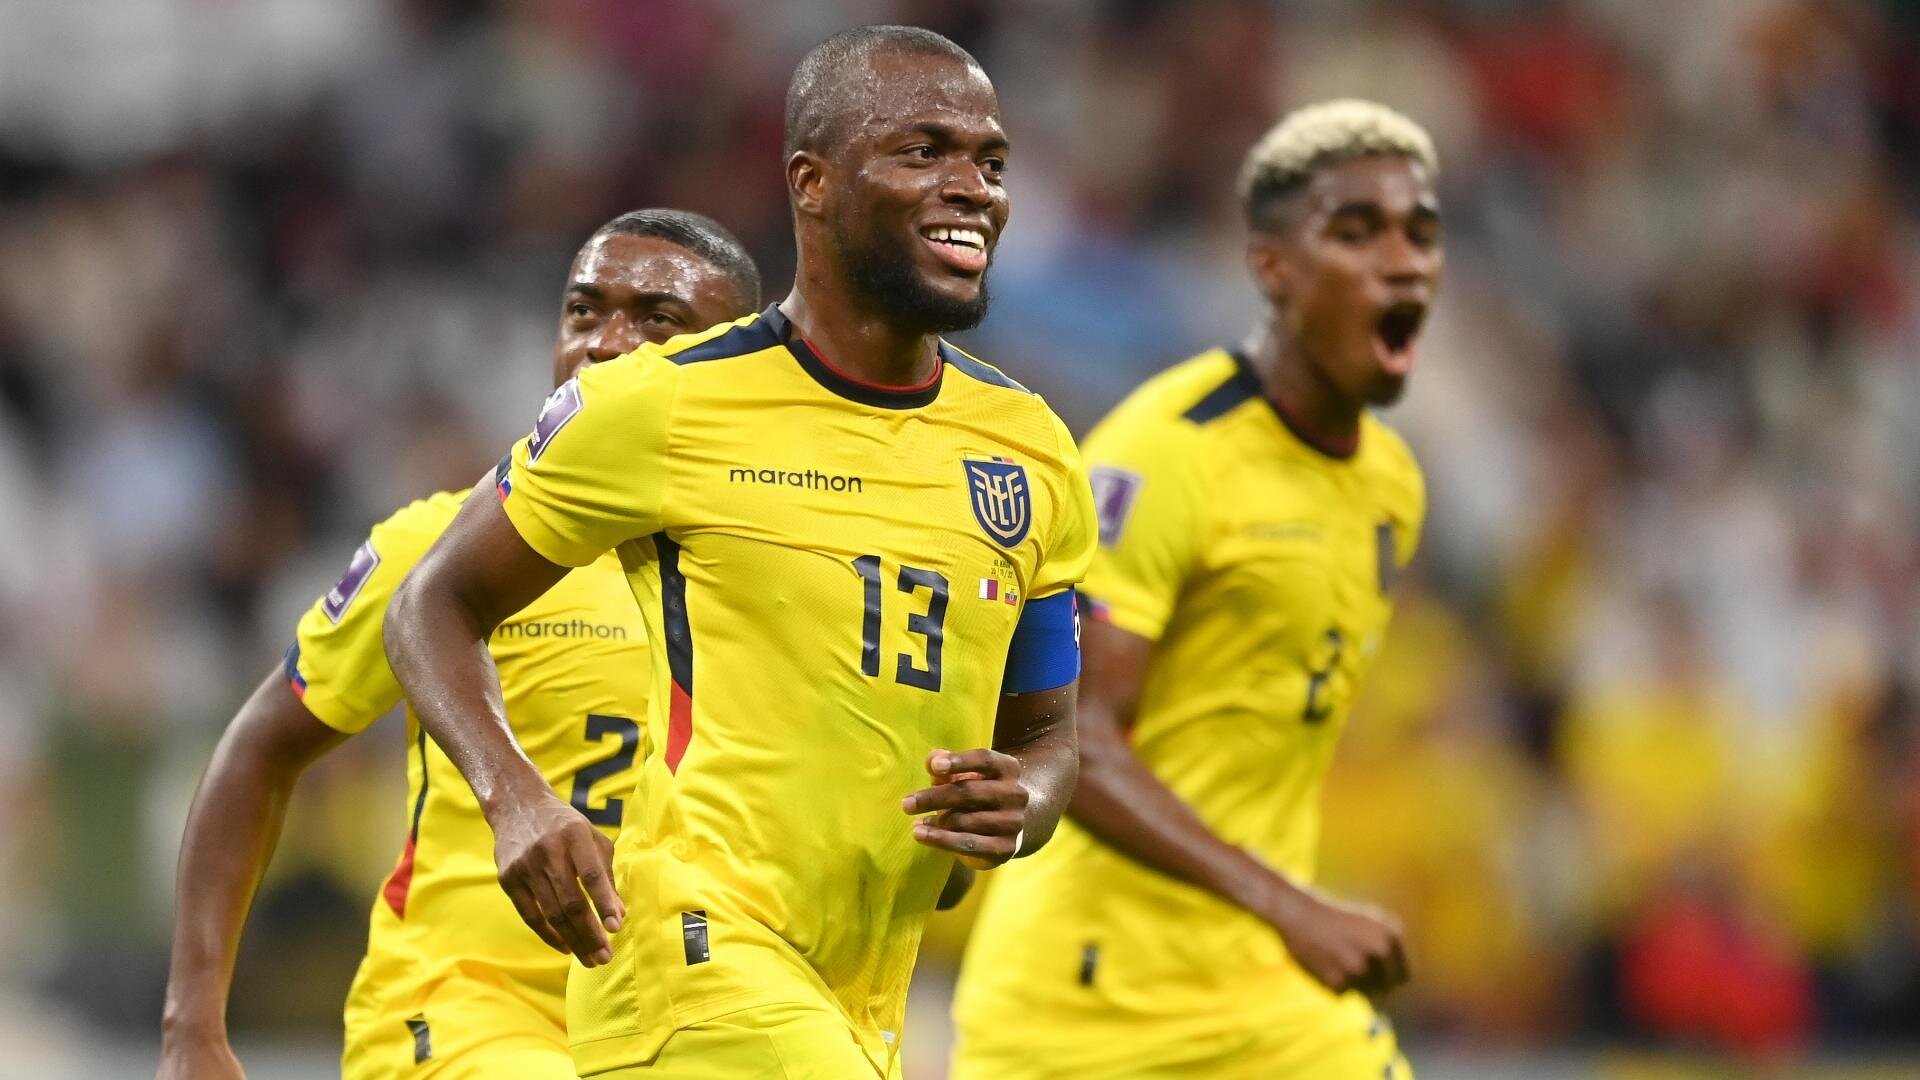 Ecuador Qatar World Cup 2022